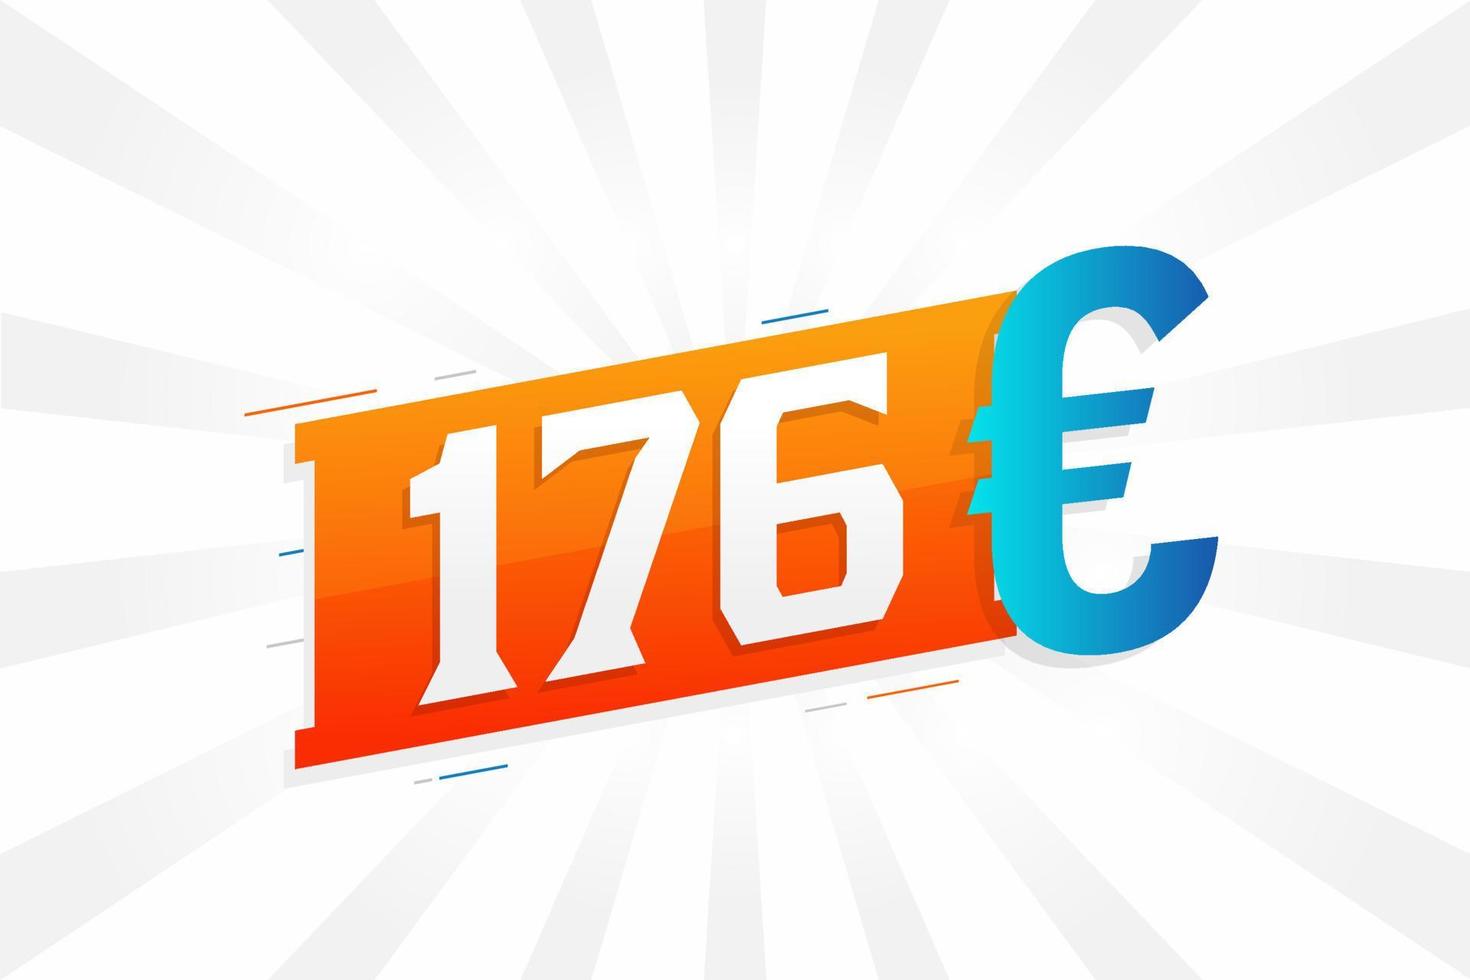 Symbole de texte vectoriel de devise de 176 euros. 176 euro union européenne argent vecteur de stock